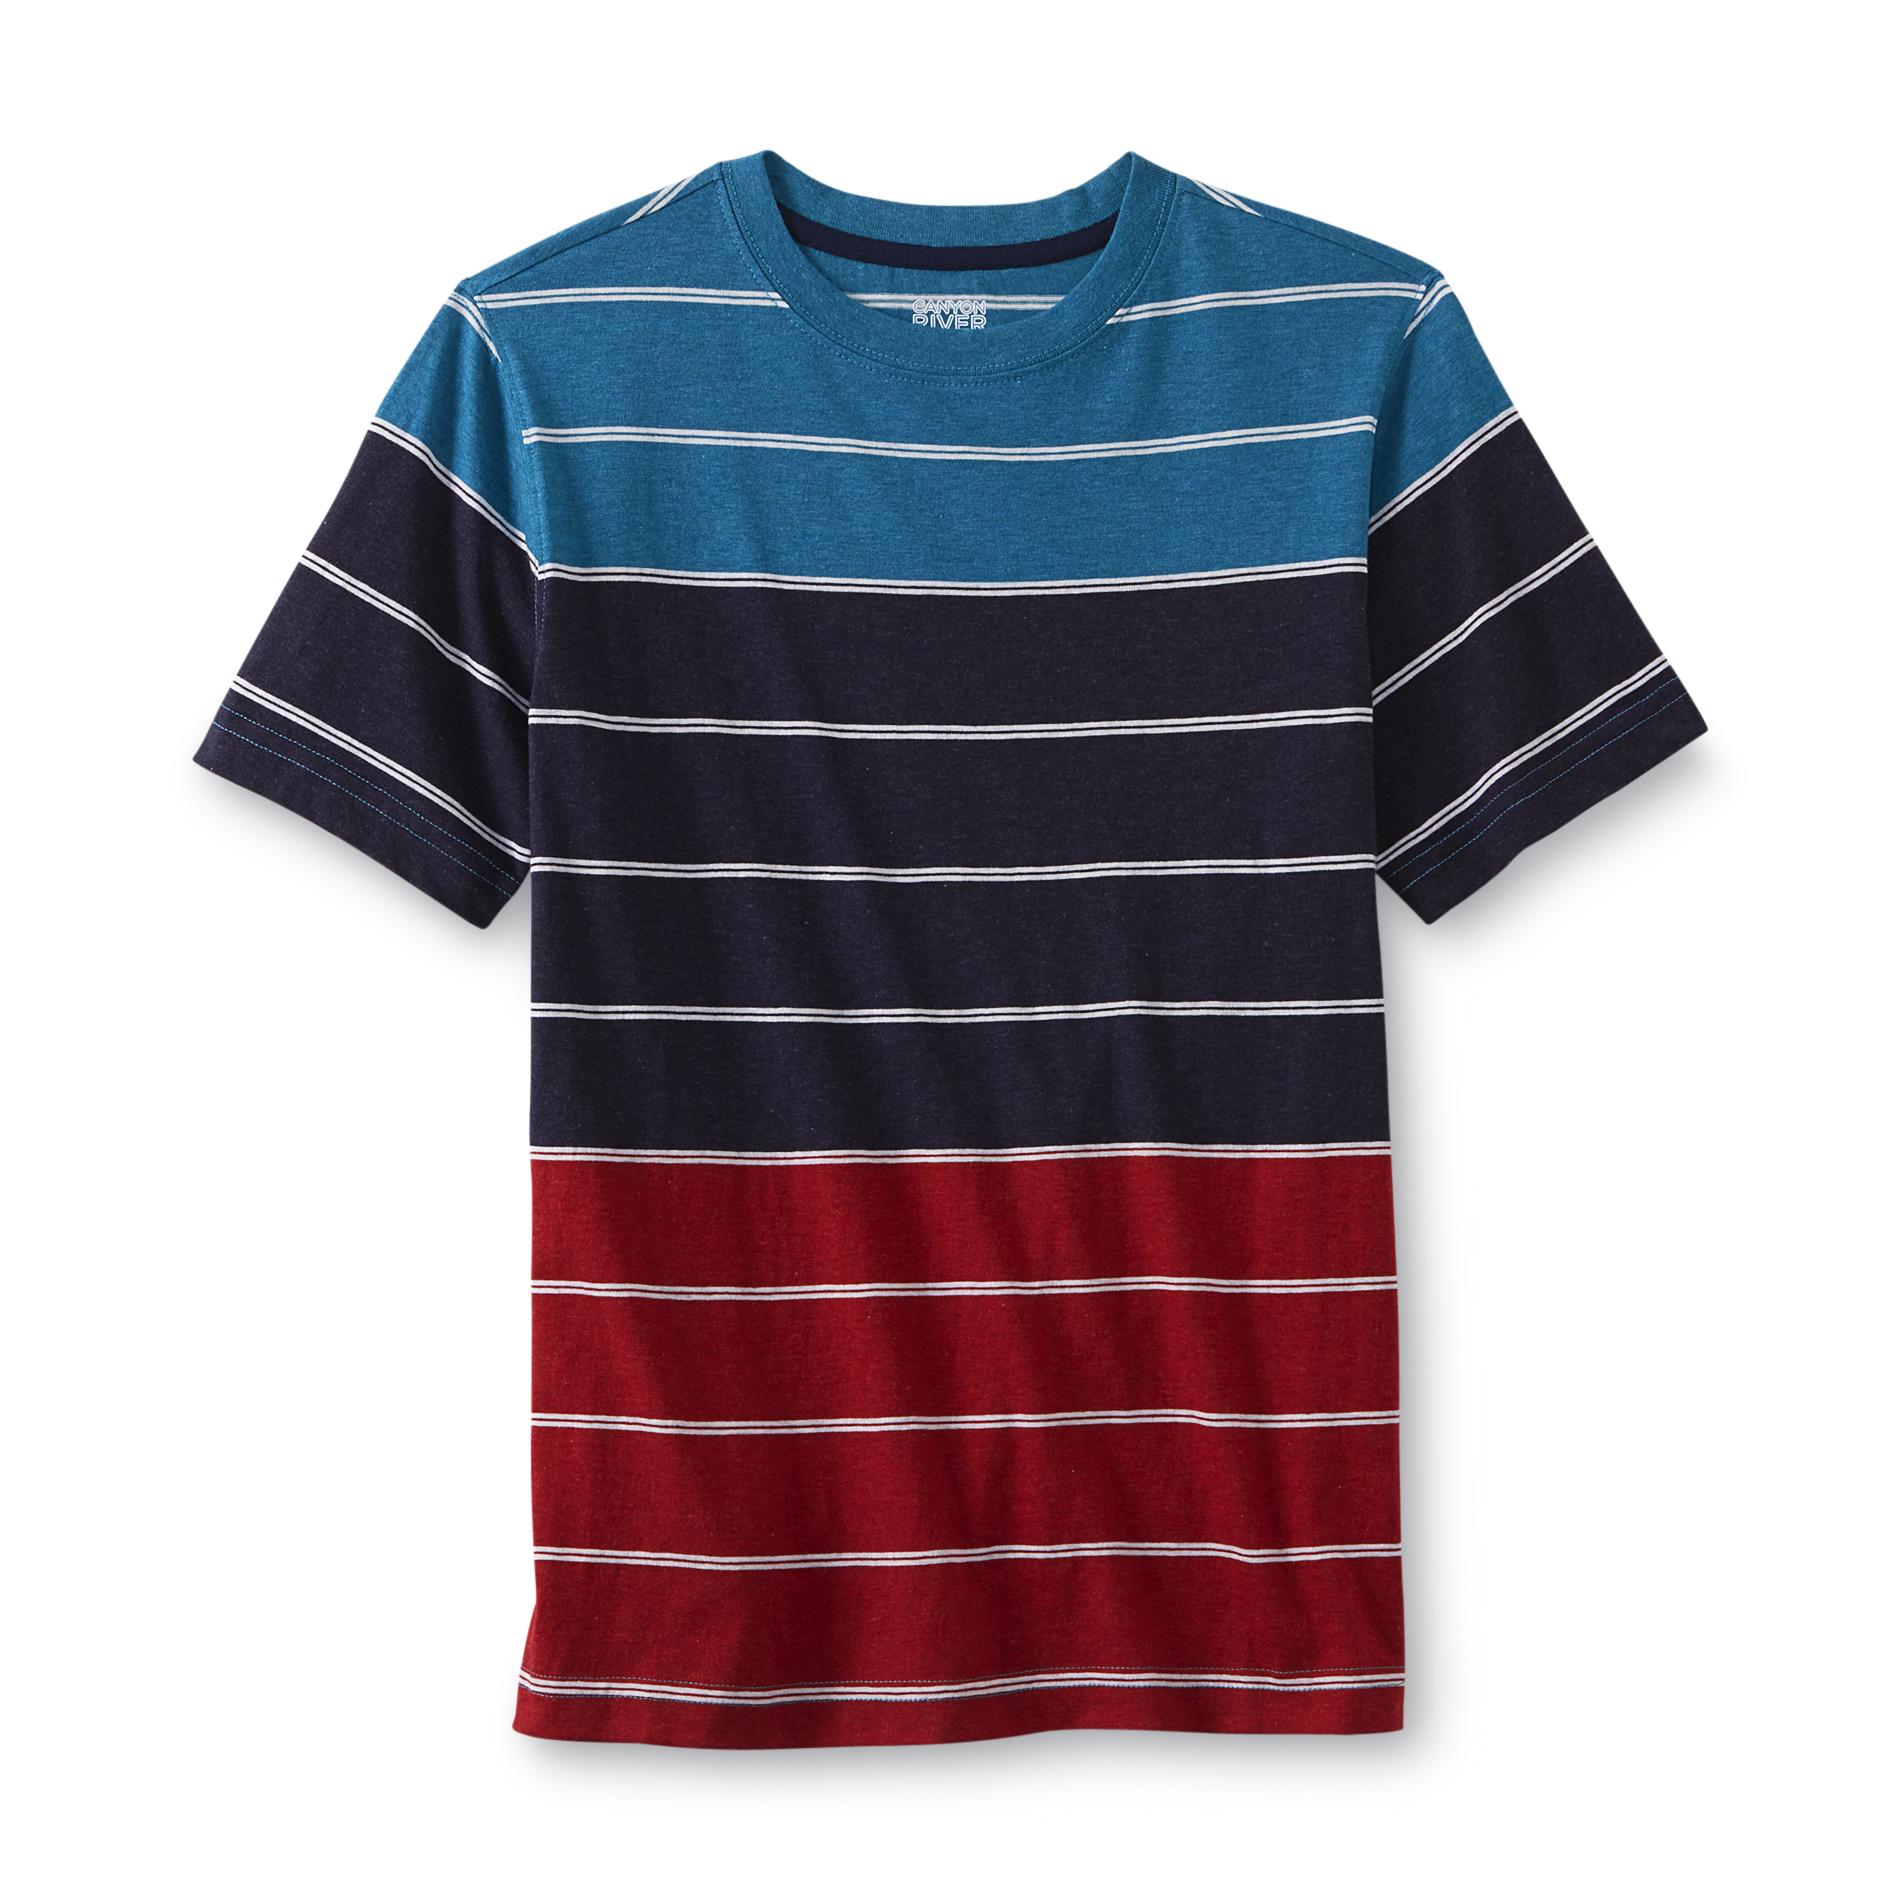 Canyon River Blues Boy's T-Shirt - Striped